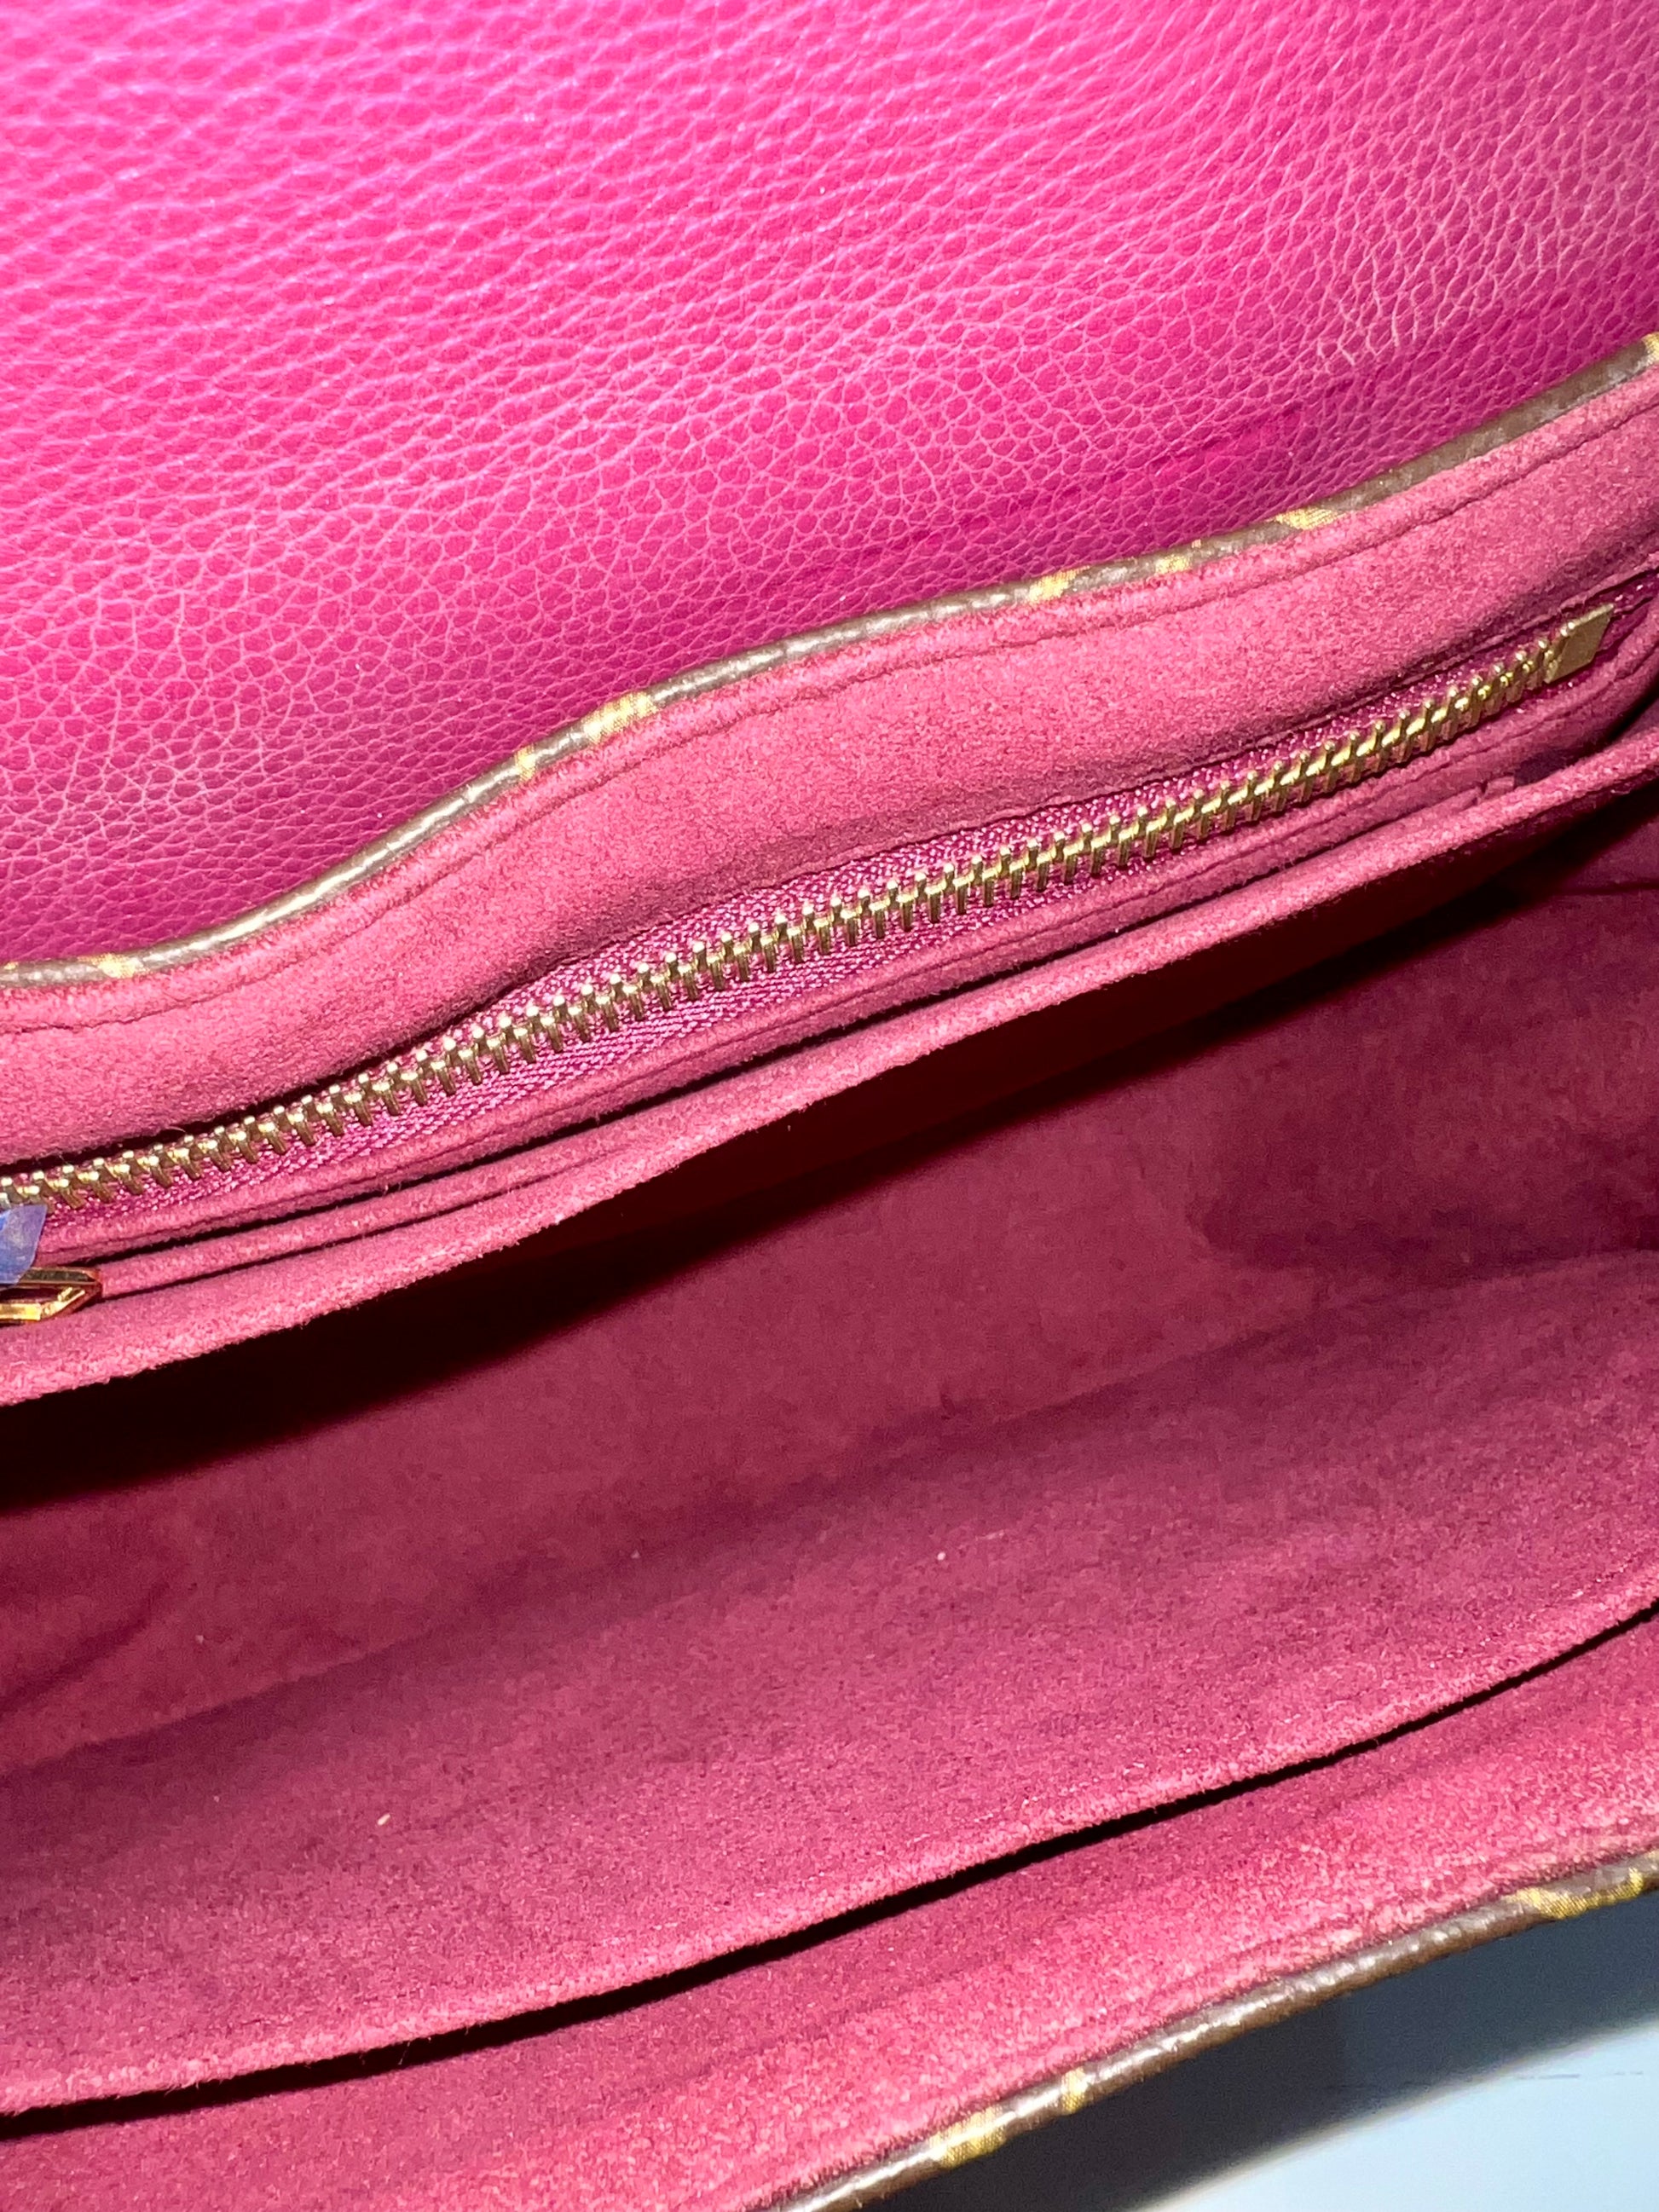 New Louis Vuitton Montaigne MM handbag strap in brown monogram